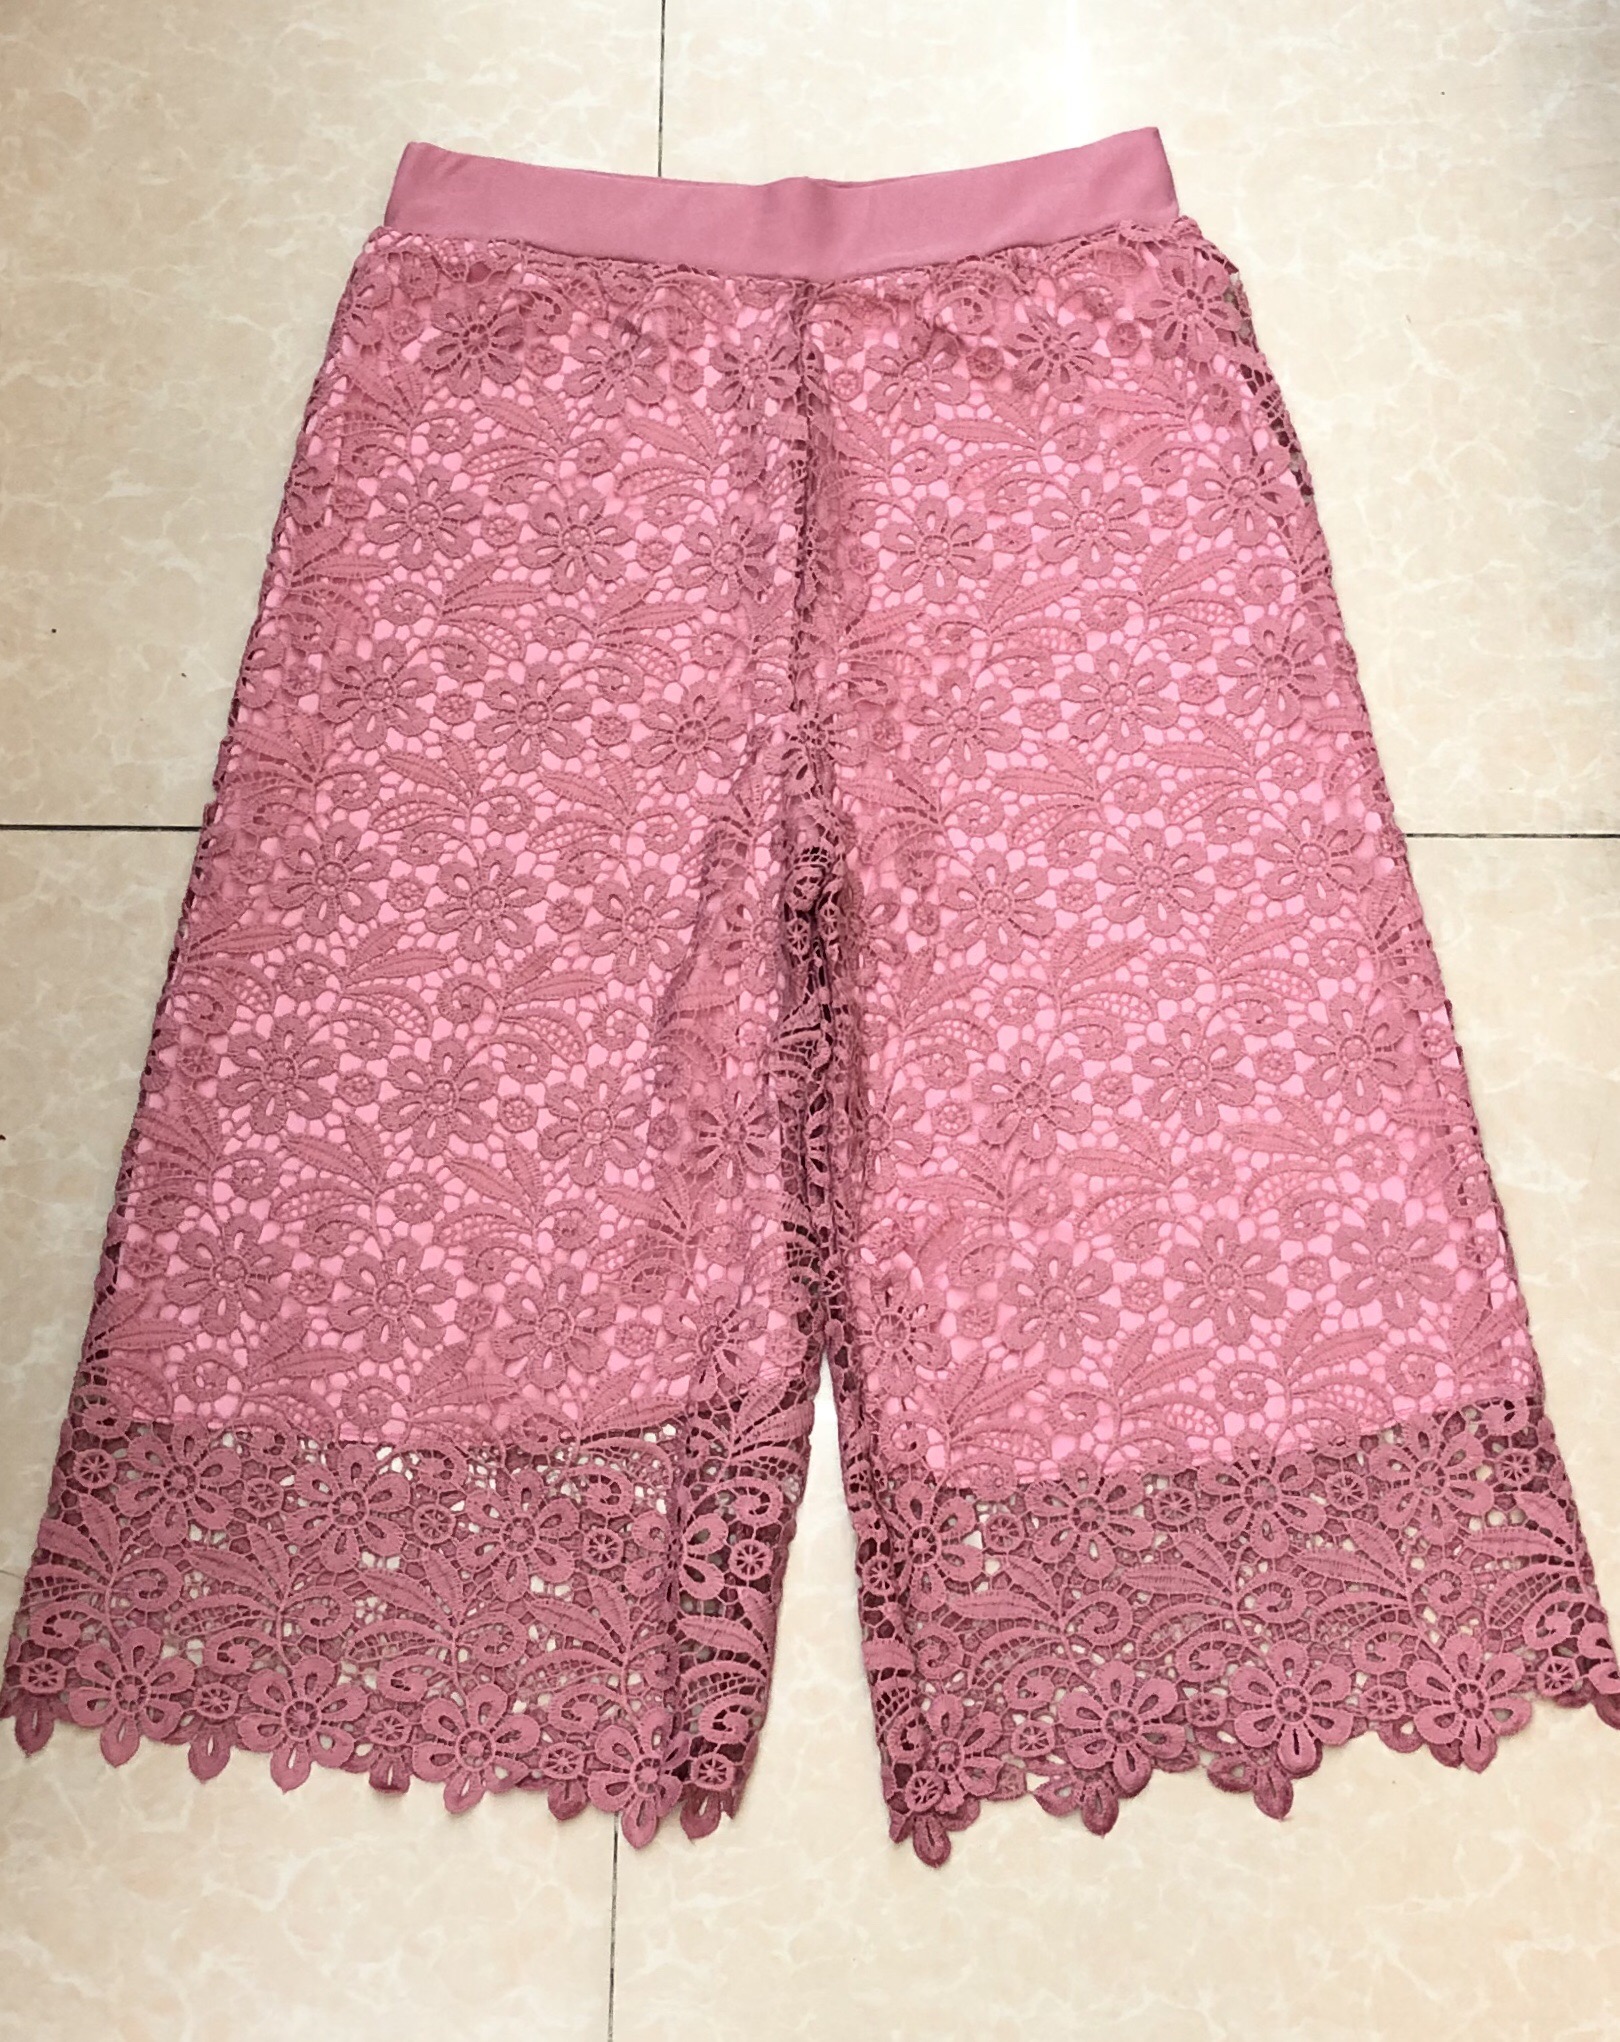 ZF SHOP กางเกงสตรี กางเกงขายาว  กางเกงลูกไม้  กางเกงยาวลูกไม้ กางเกงแฟชั่น  ลายดอกไม้ #721#